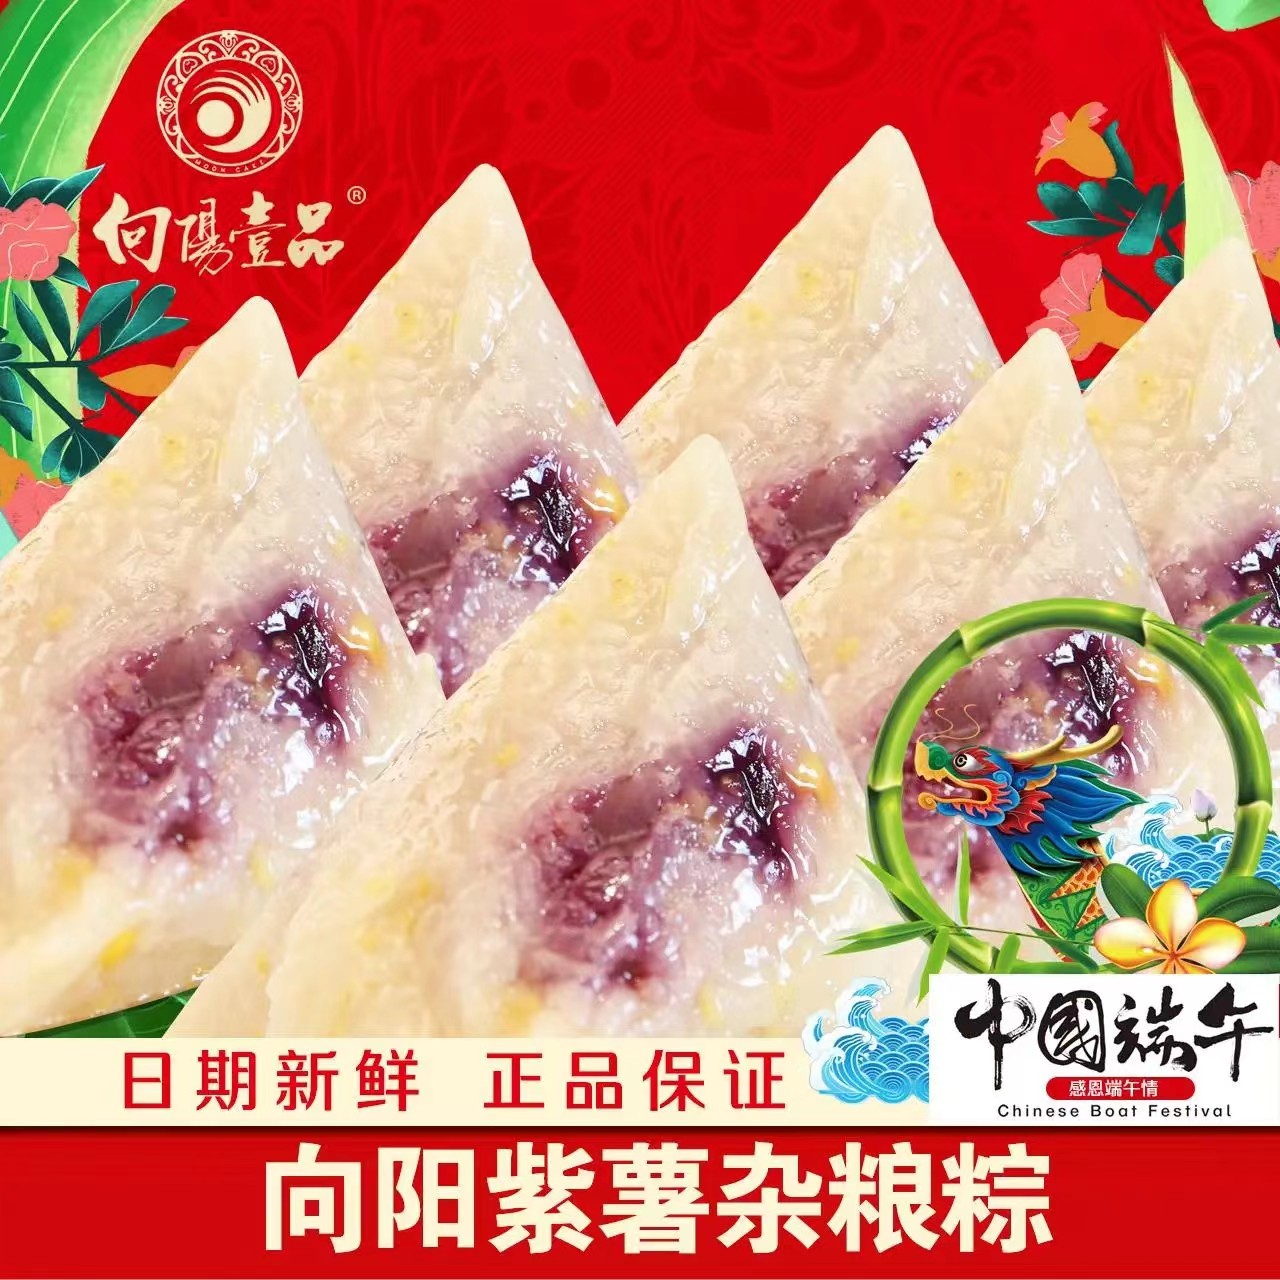 端午节粽子150g*4 袋装 10种口味可选